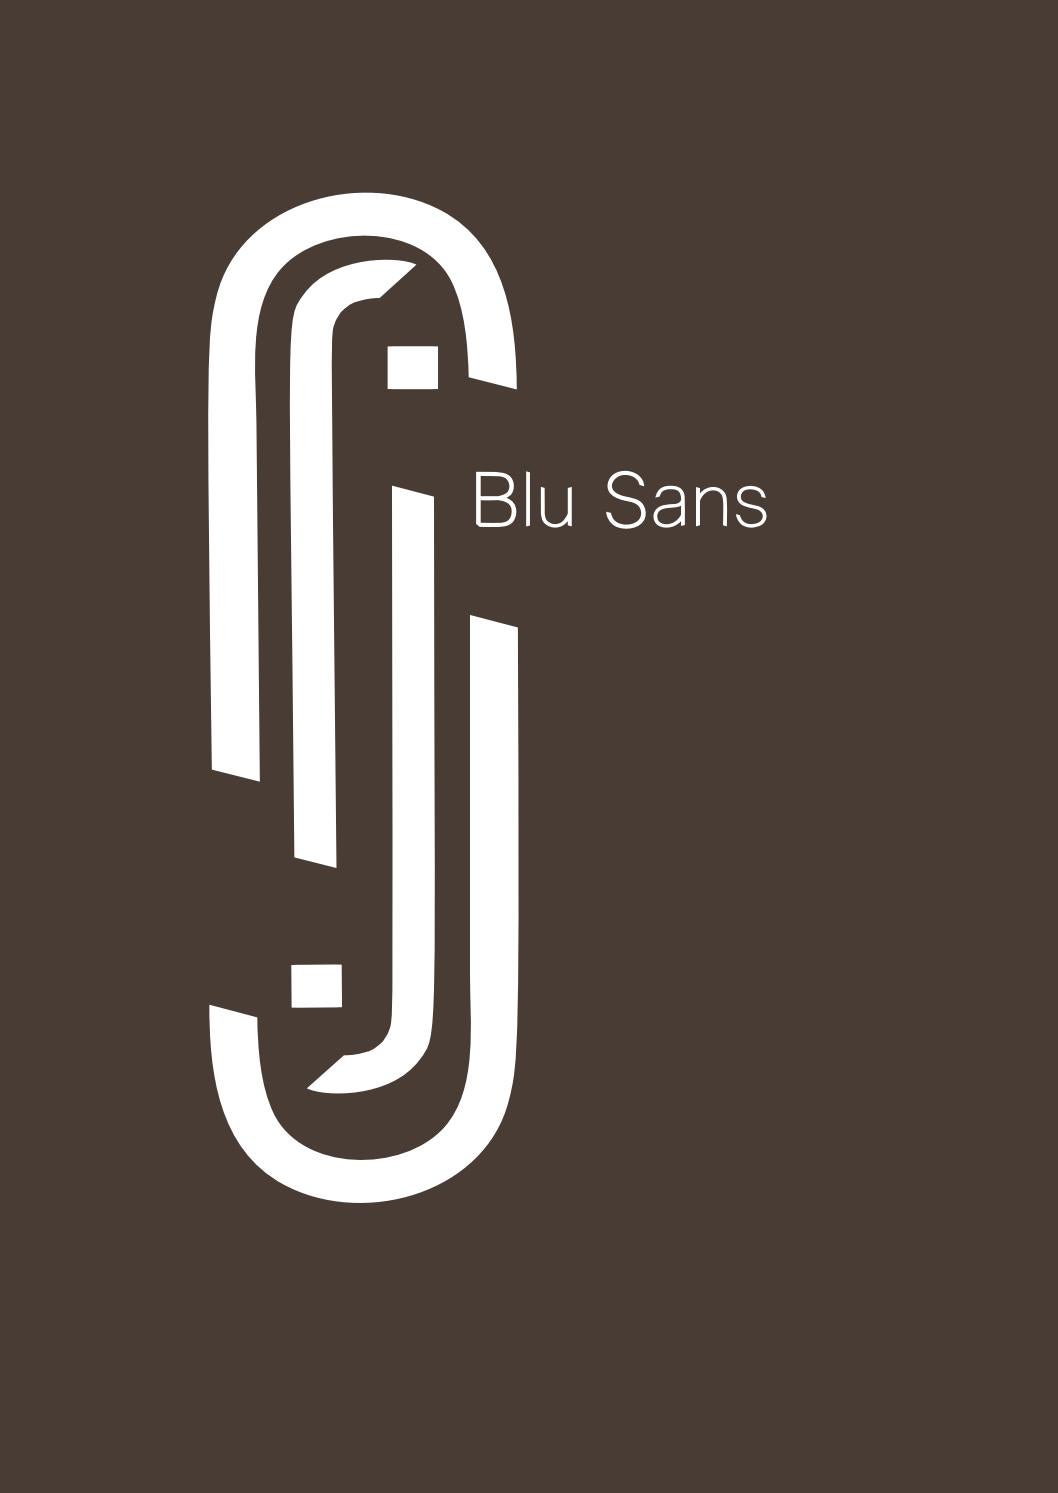 Ejemplo de fuente Blu Sans